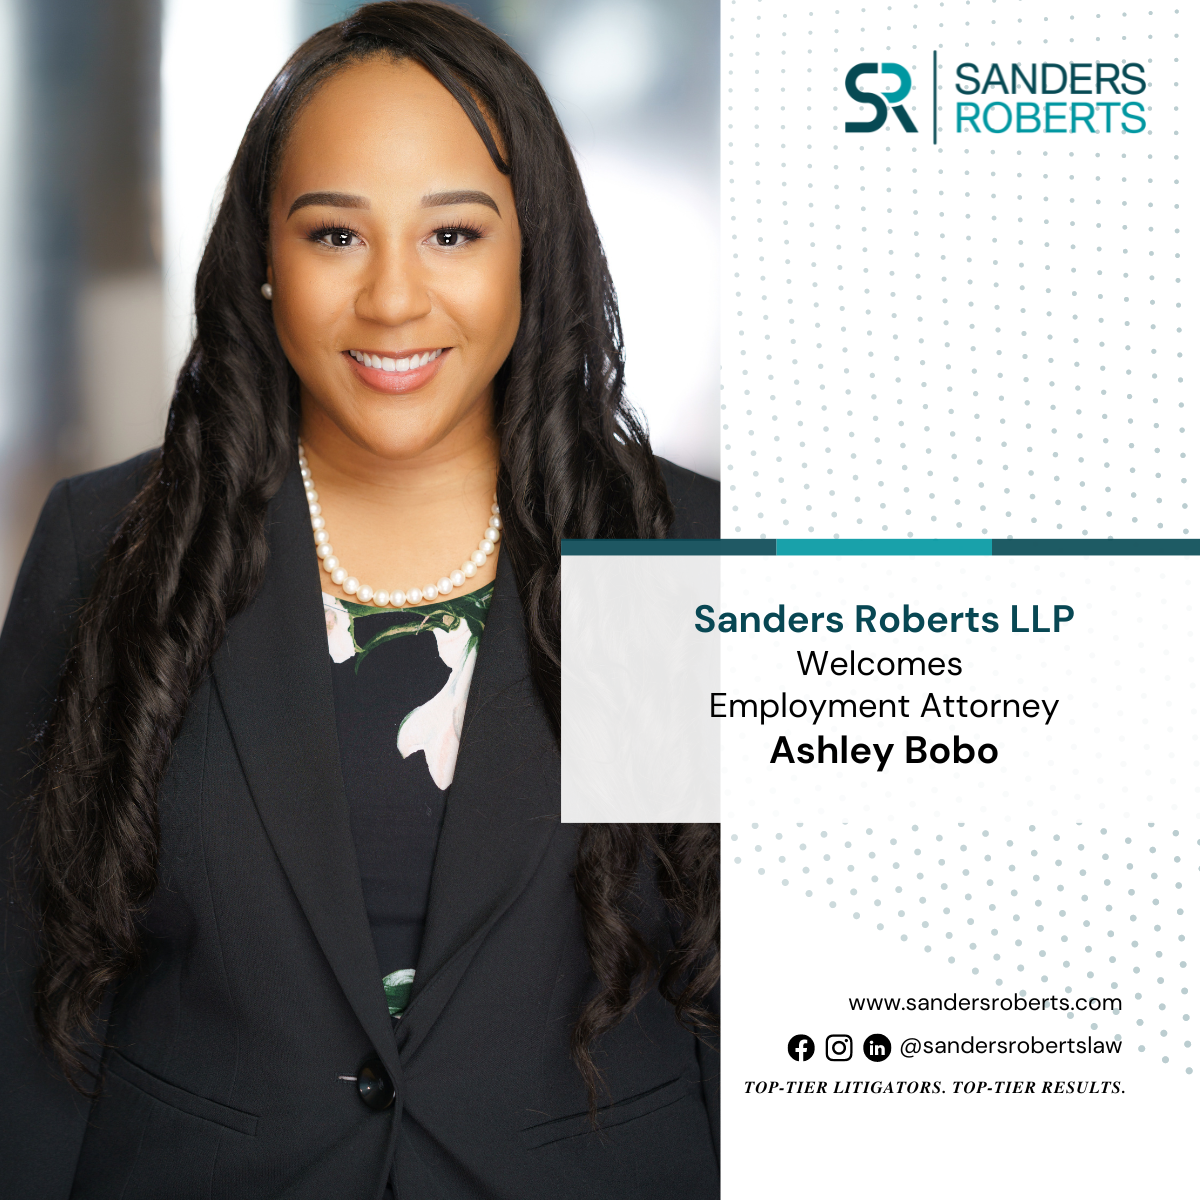 Ashley Bobo - Employment Attorney